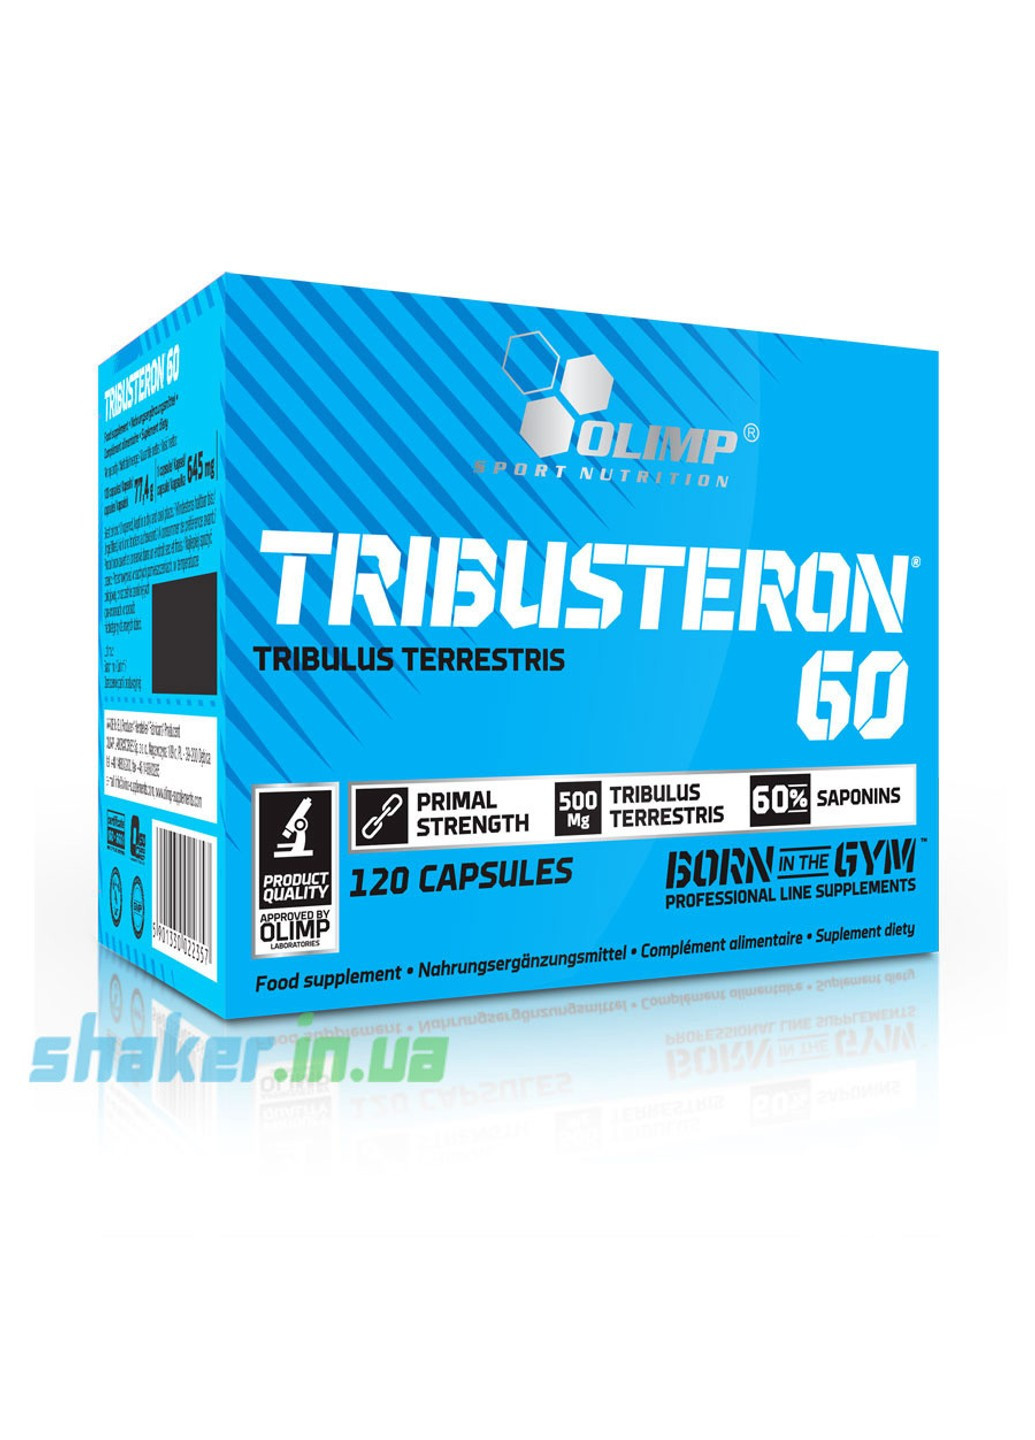 Трибулус террестрис Tribusteron 60 (120 капс) олимп трибустерон Olimp (255408548)